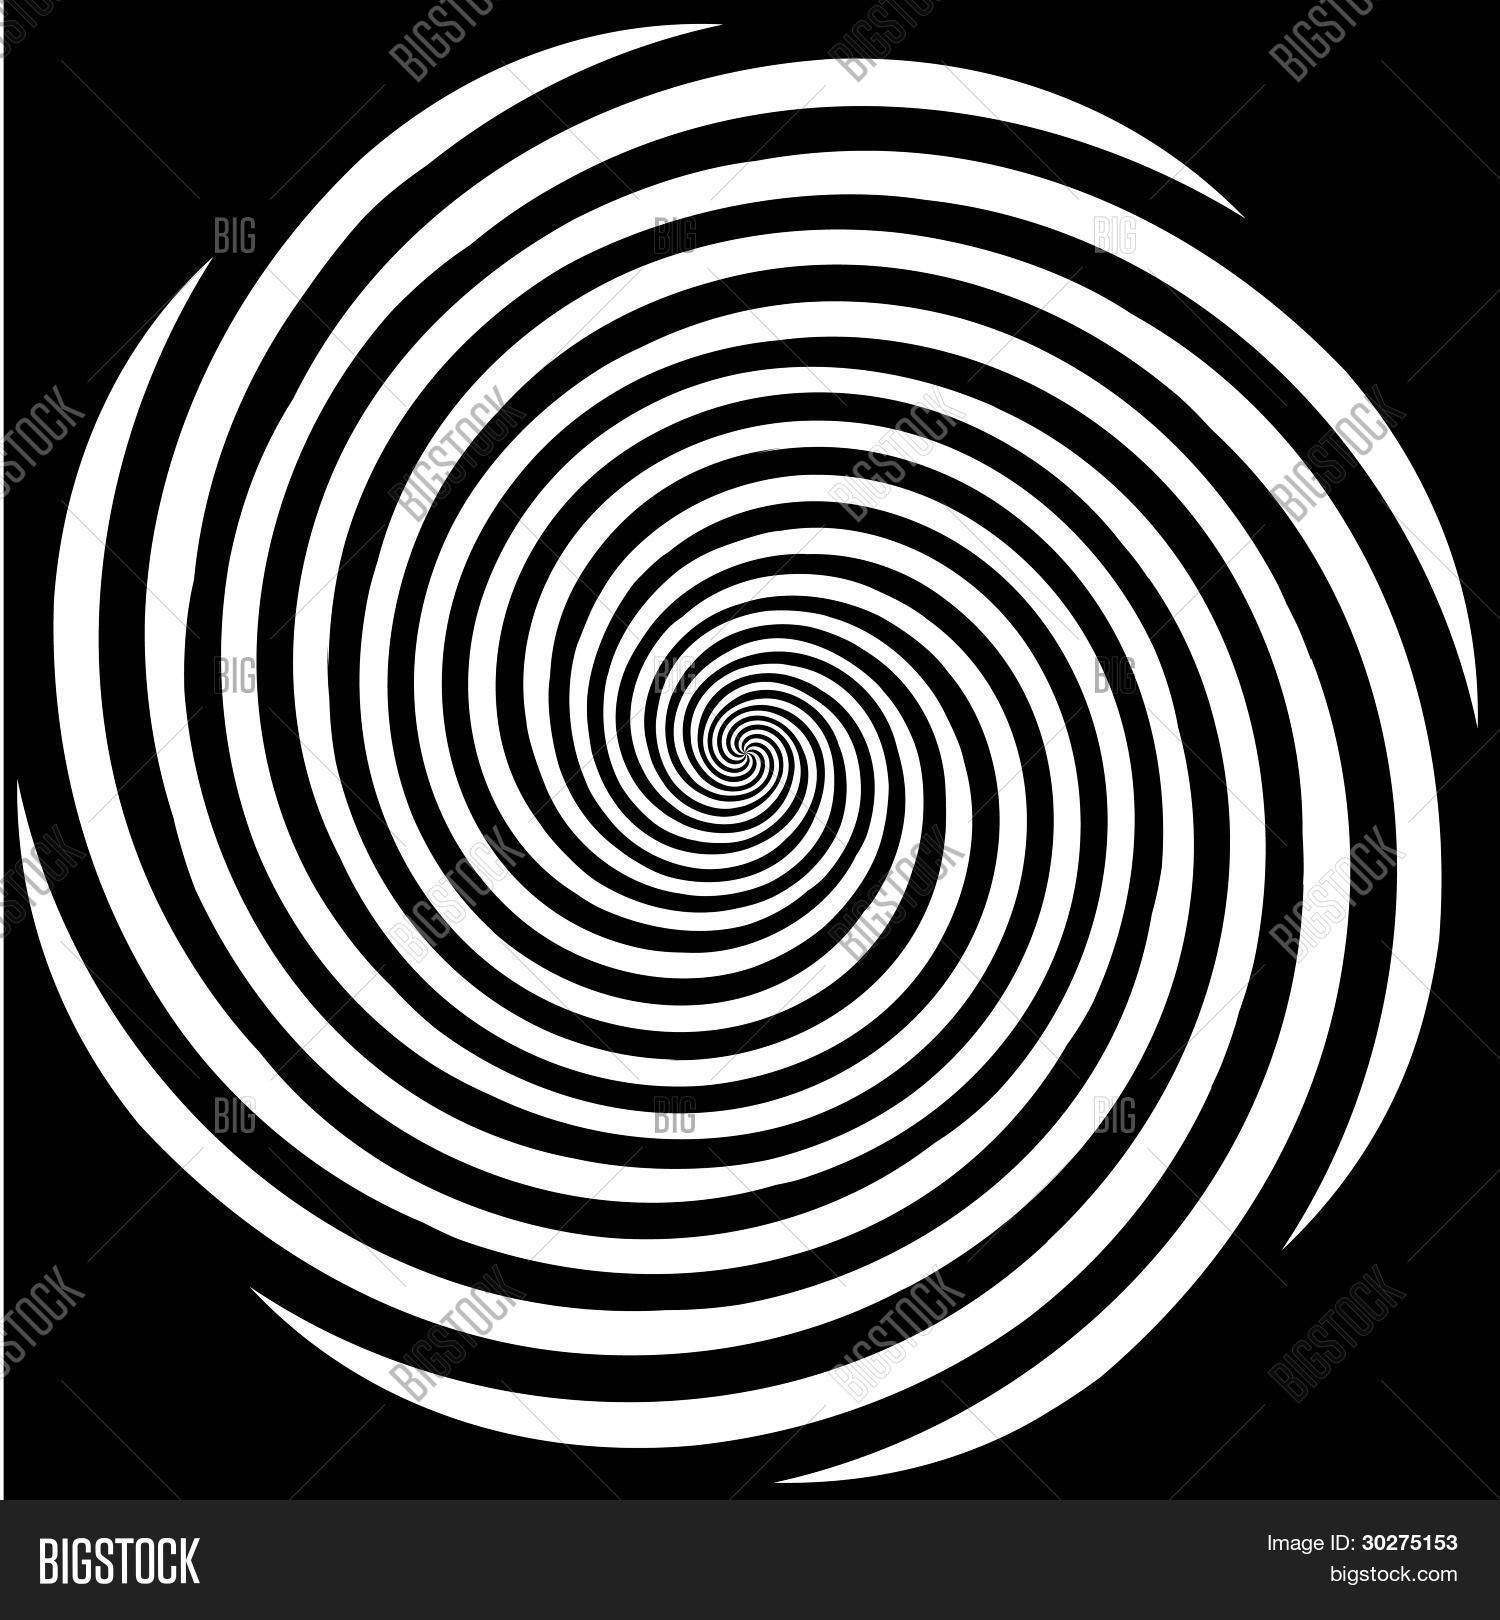 Hypnosis Spiral Design Pattern Vector & Photo | Bigstock